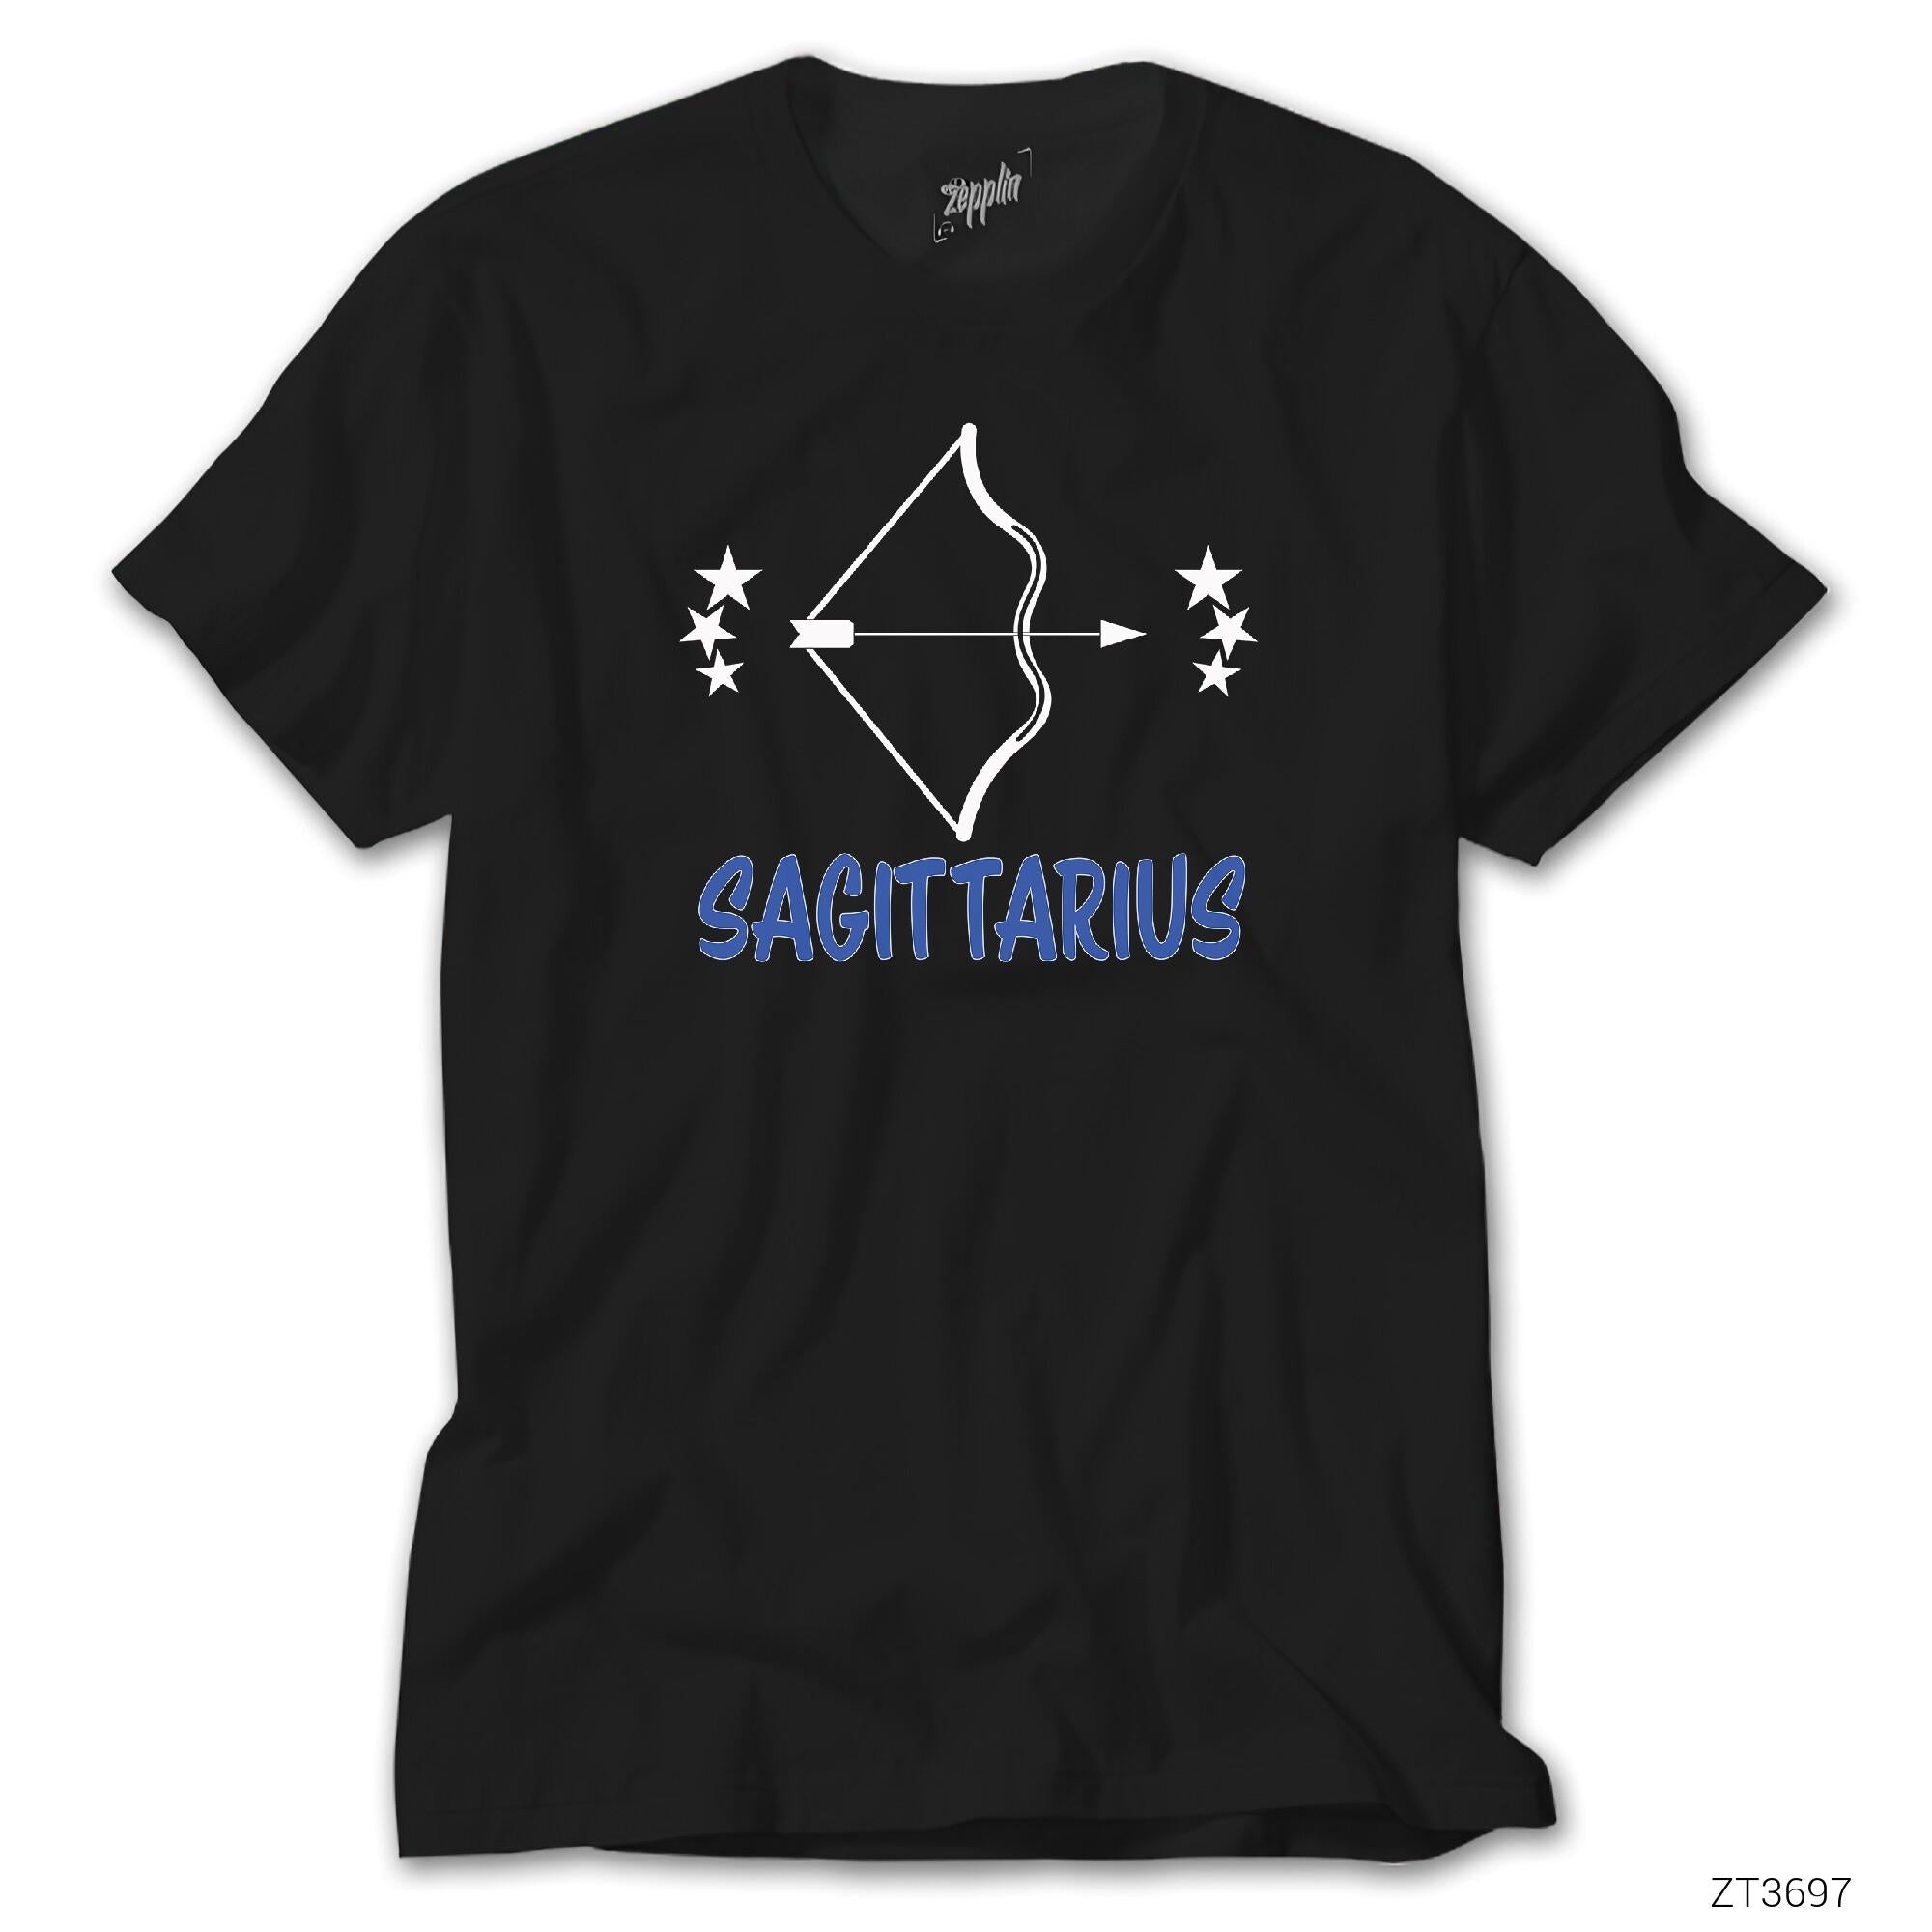 Yay Burcu Sagittarius Siyah Tişört